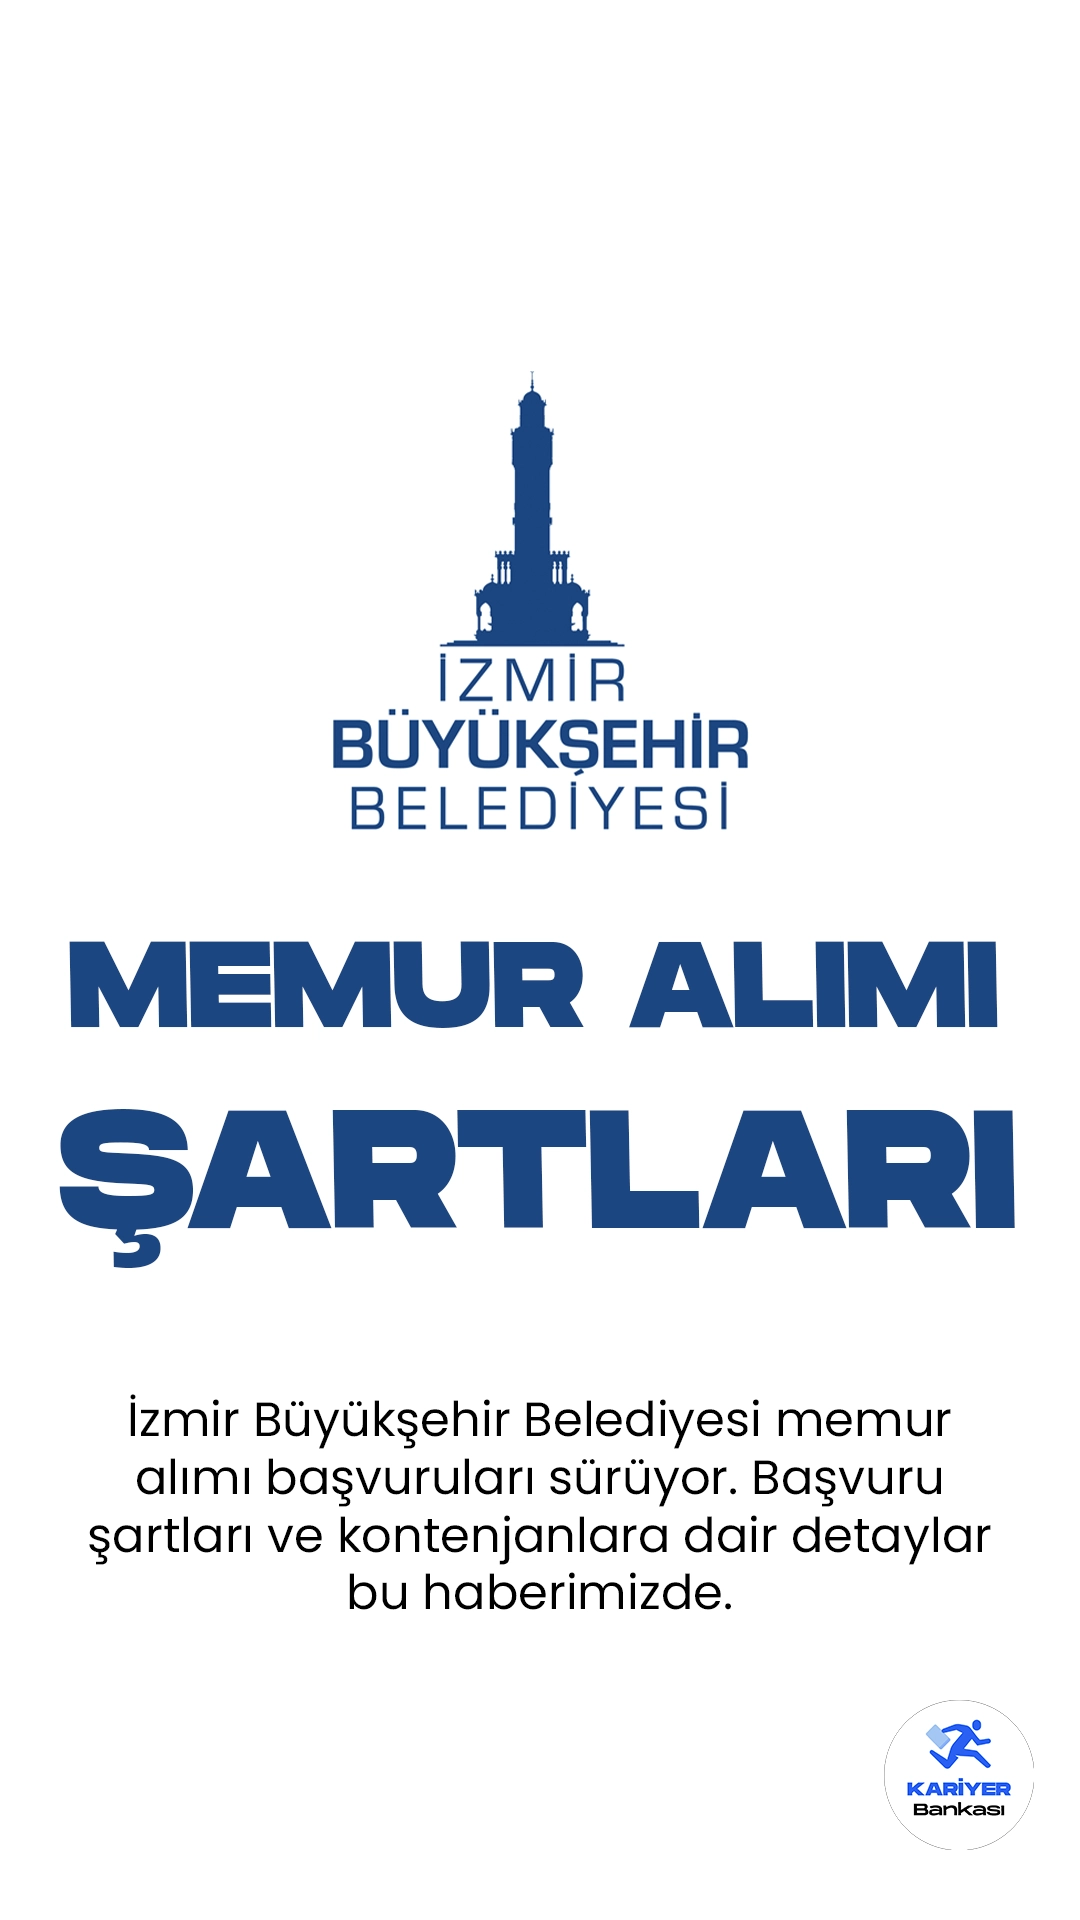 İzmir Büyükşehir Belediyesi memur alımı başvuruları alınıyor. Başvuru şartları ve kontenjanlara dair detaylar bu haberimizde.